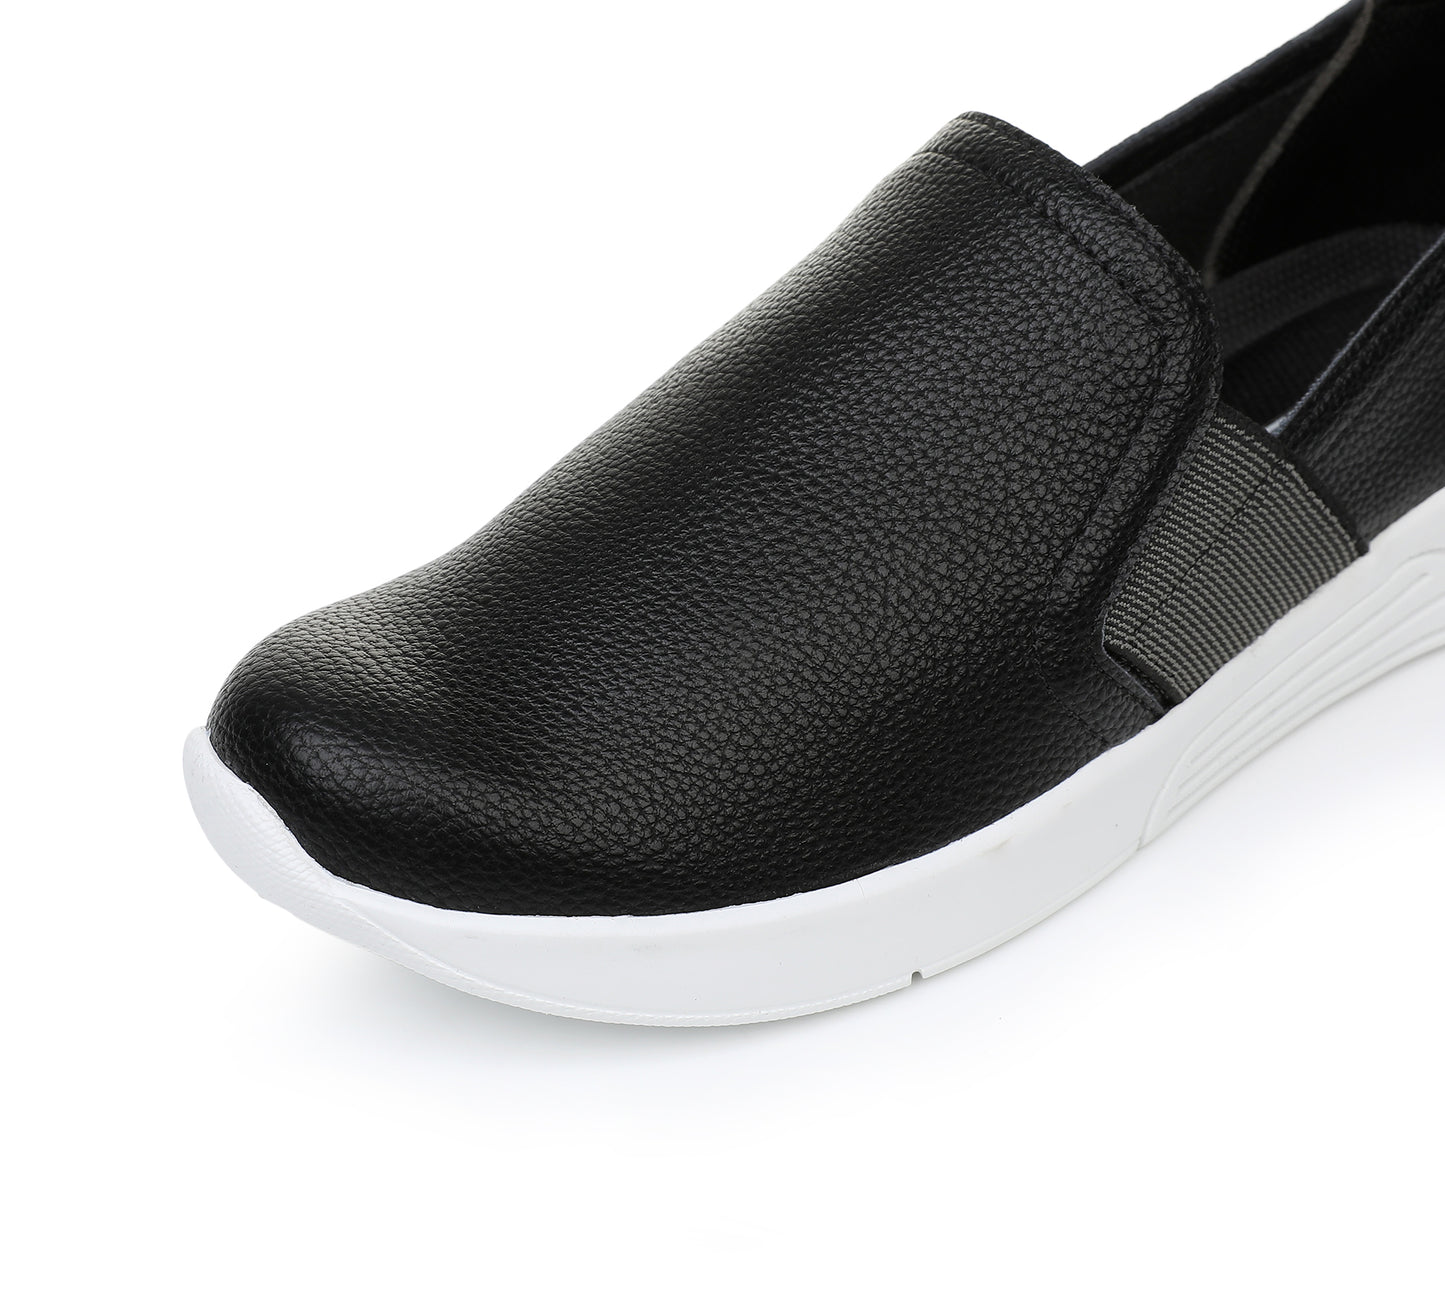 Breezy Kicks Slip-on Sneakers - Black (970.033)